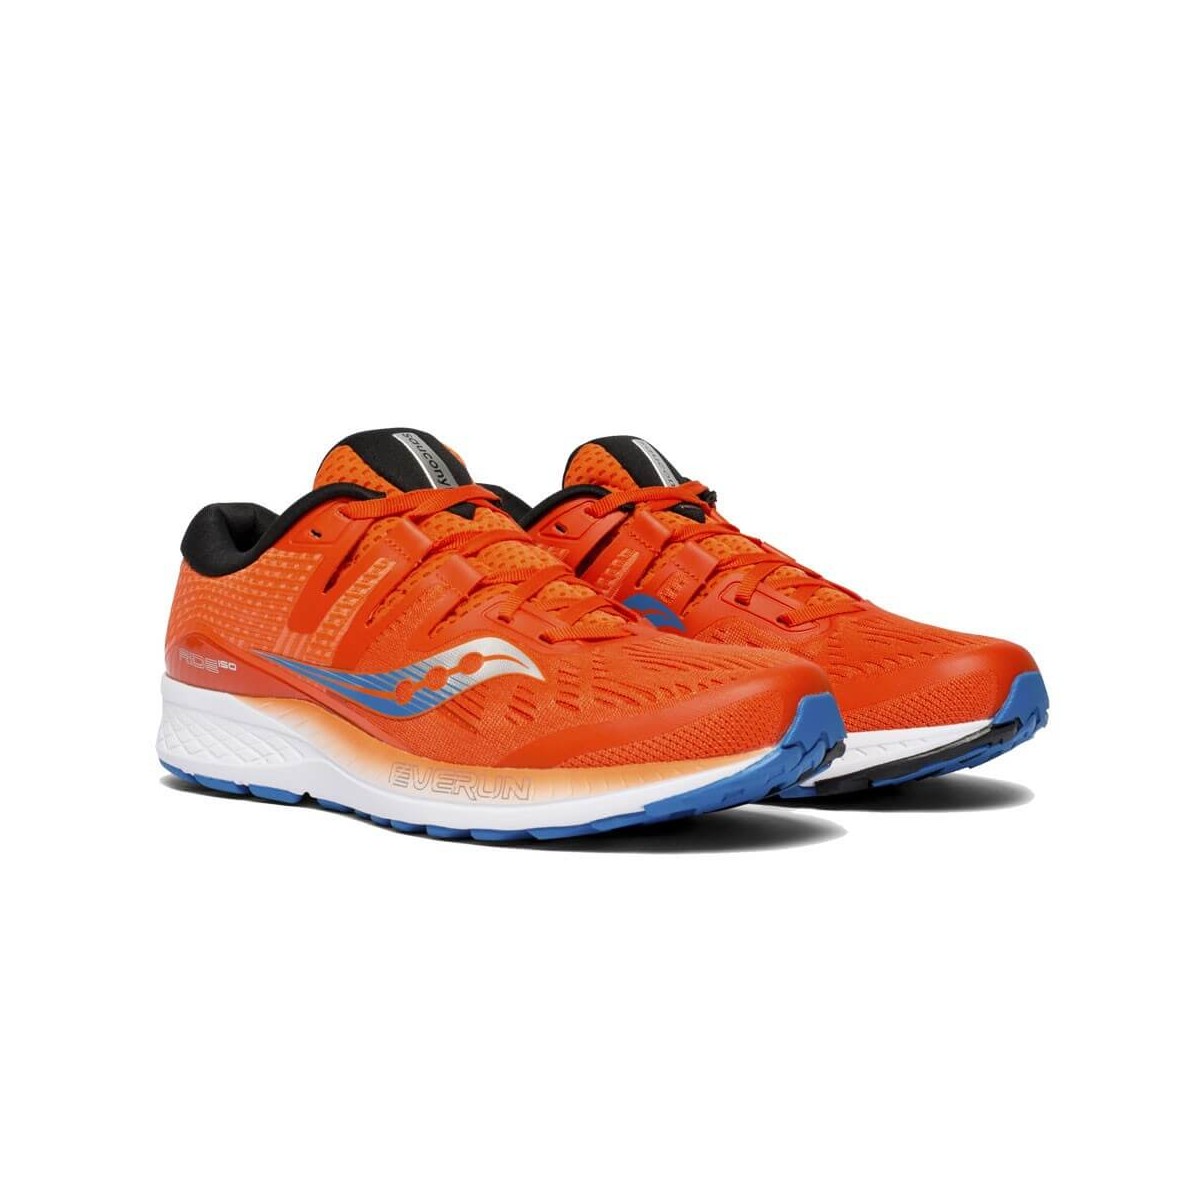 Saucony Ride ISO Men's Running Shoes Orange